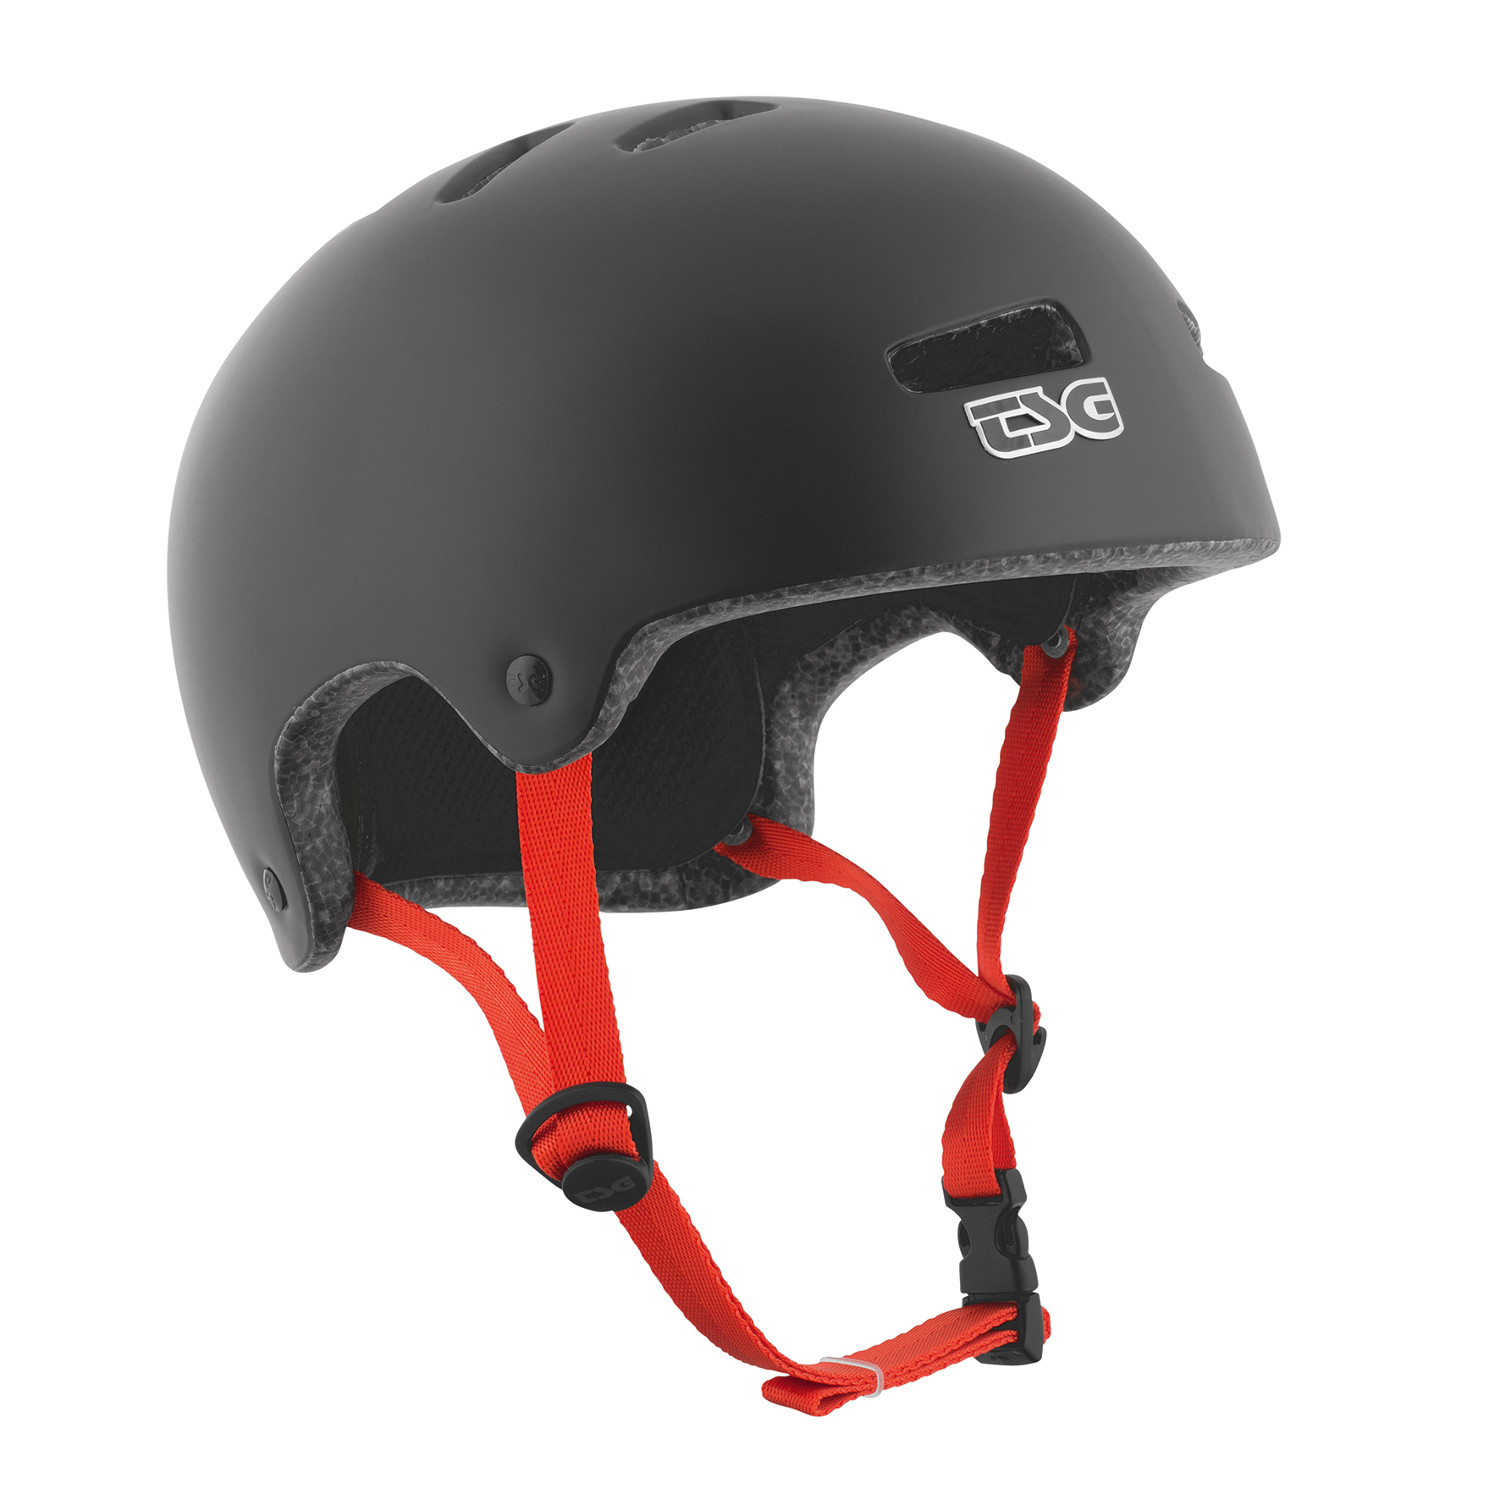 TSG BMX/Dirt Helmet Superlight Solid Color - Satin Black